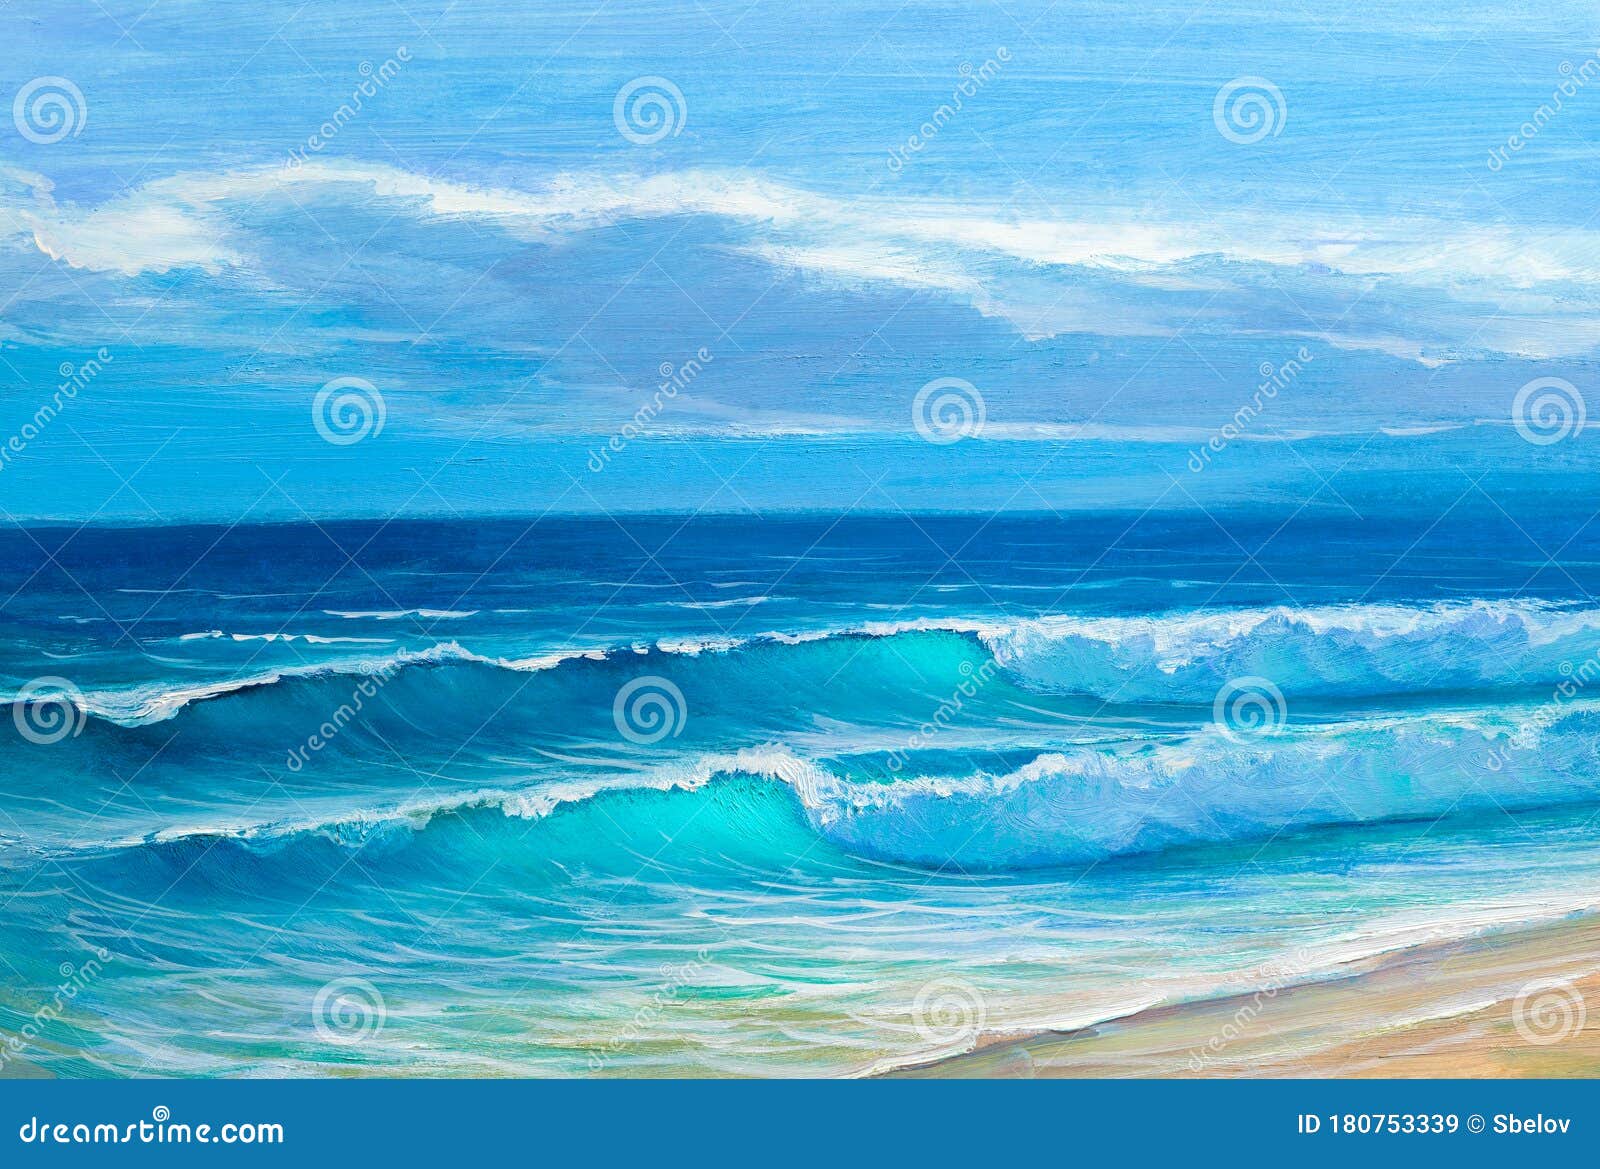 Nautical Oil Landscape Original Seascape Painting Ocean Artwork Beach Landscape On Canvas Square Landscape Textured Impasto Art 8 by 8”